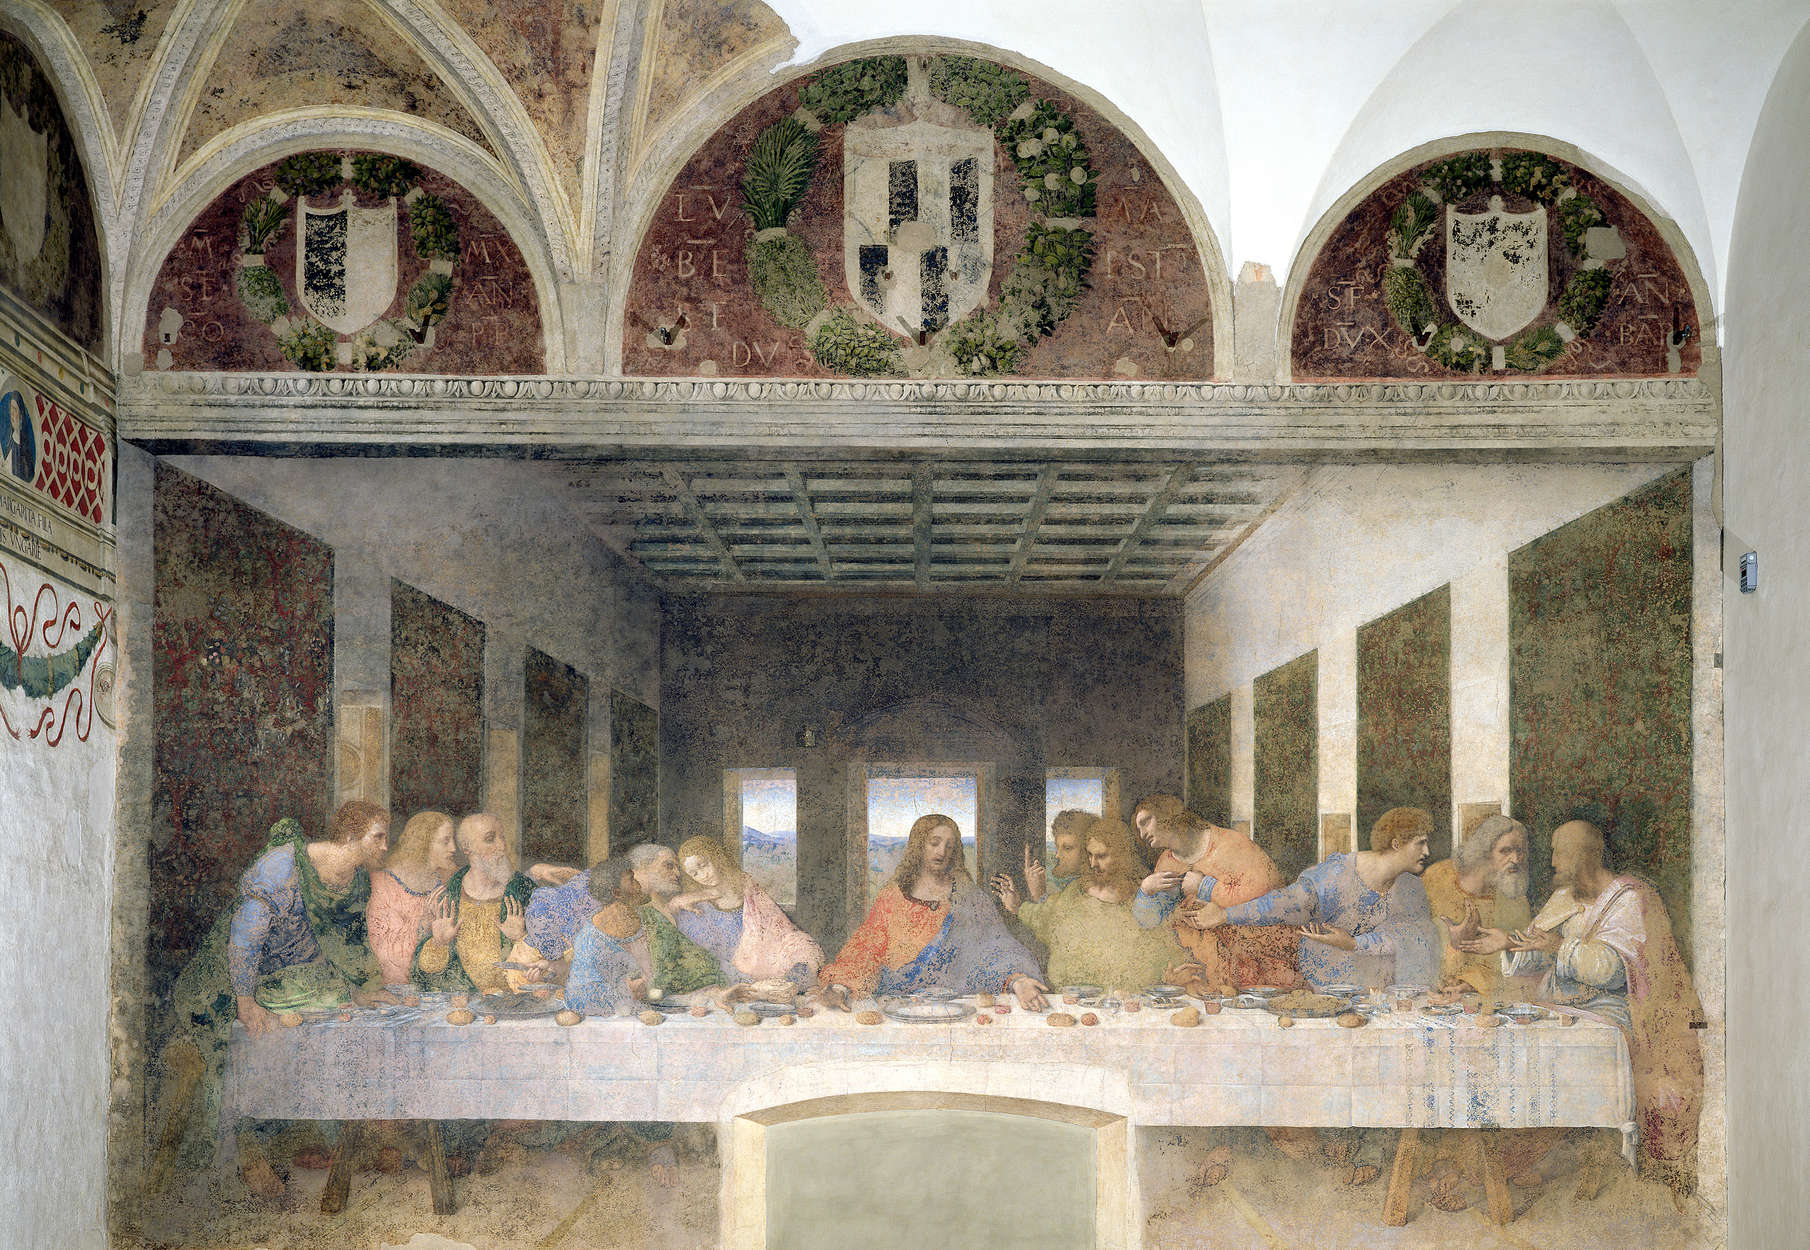             Il murale "L'Ultima Cena" di Leonardo da Vinci
        